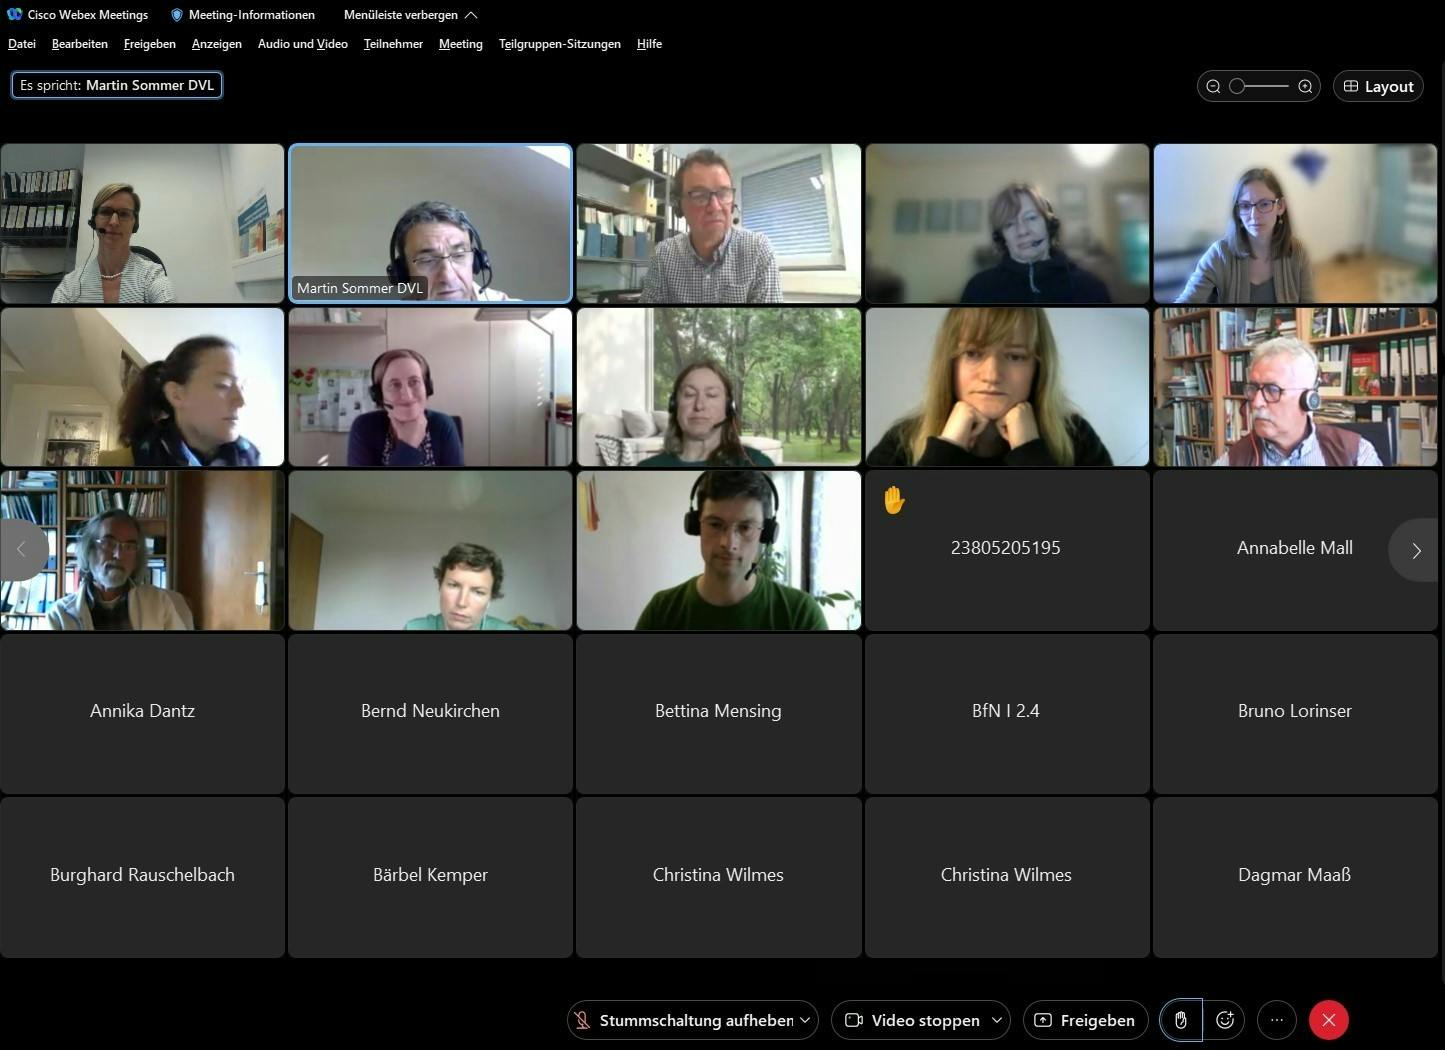 Screenshot aus dem WebEx-Videocall, auf dem die Online-Dialog-Teilnehmer kachelartig dargestellt sind – die meisten mit Video, andere nur mit ihrem Namen